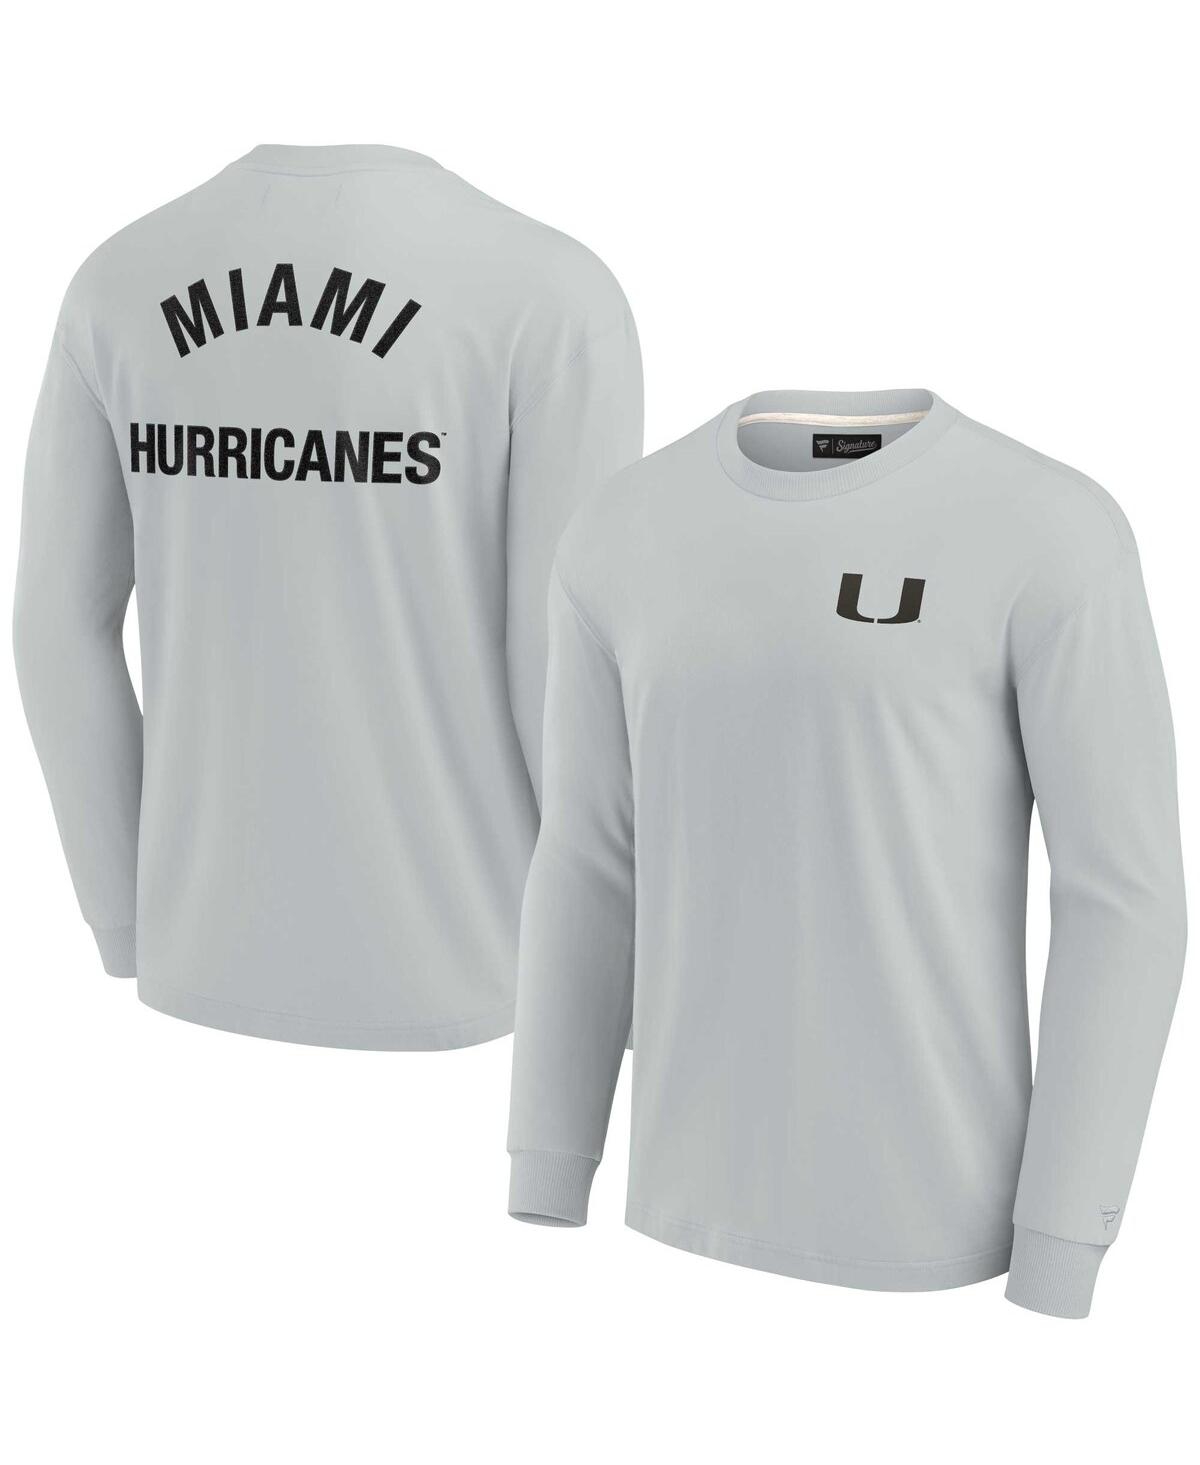 Shop Fanatics Signature Men's And Women's  Gray Miami Hurricanes Super Soft Long Sleeve T-shirt